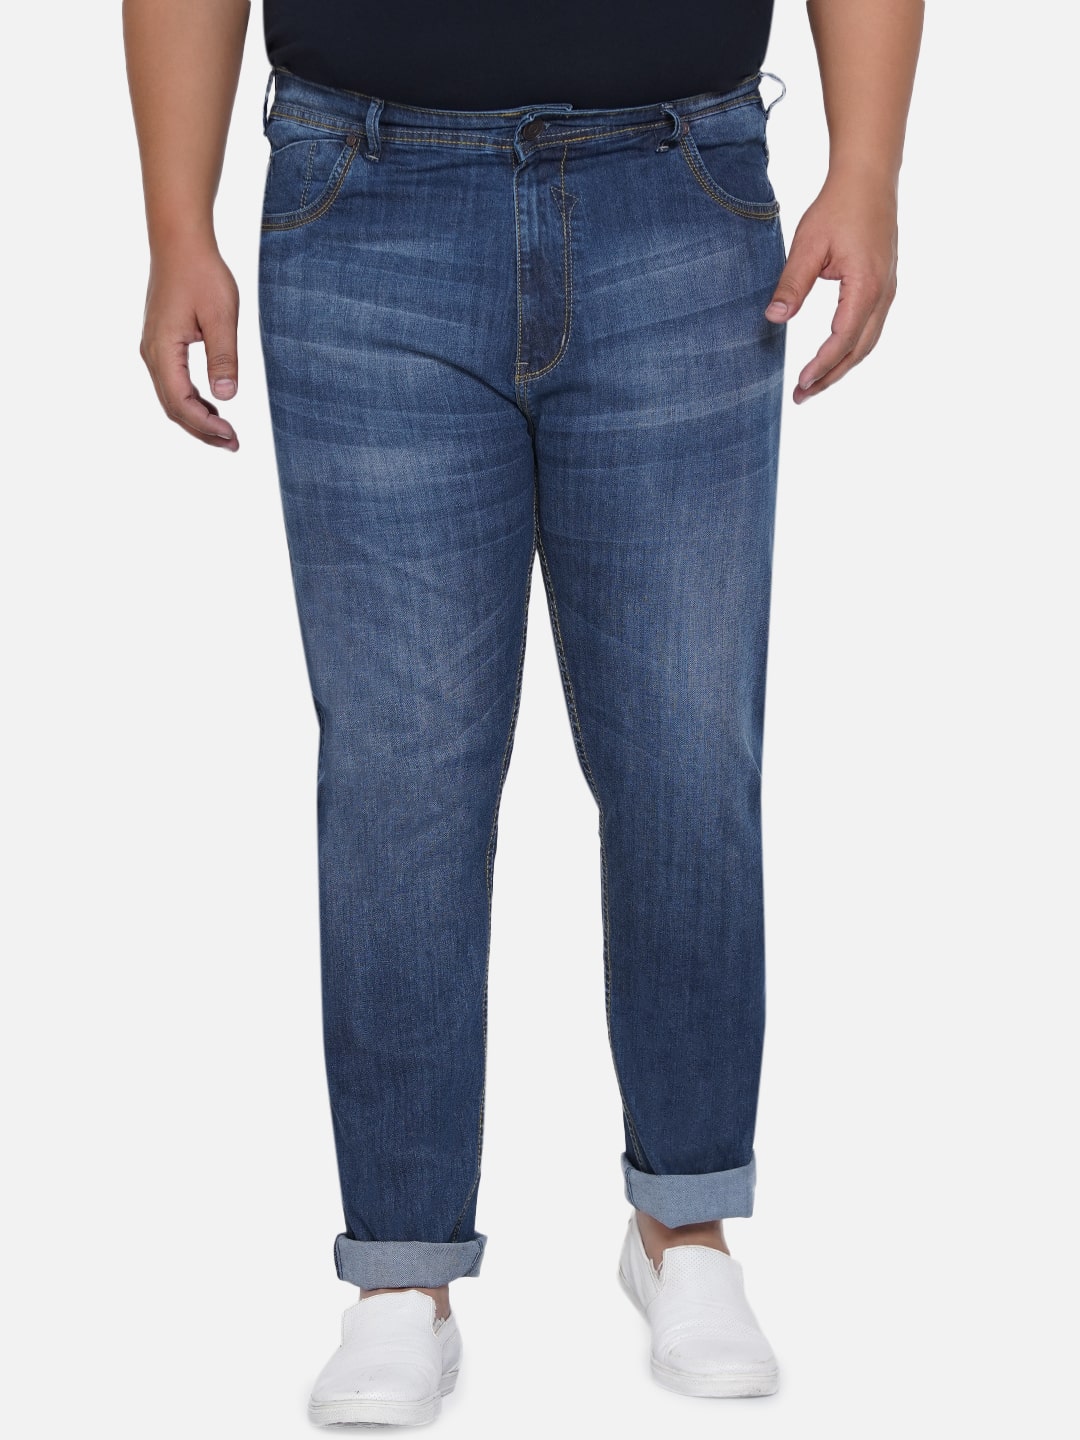 bottomwear/jeans/EJPJ25013/ejpj25013-6.jpg